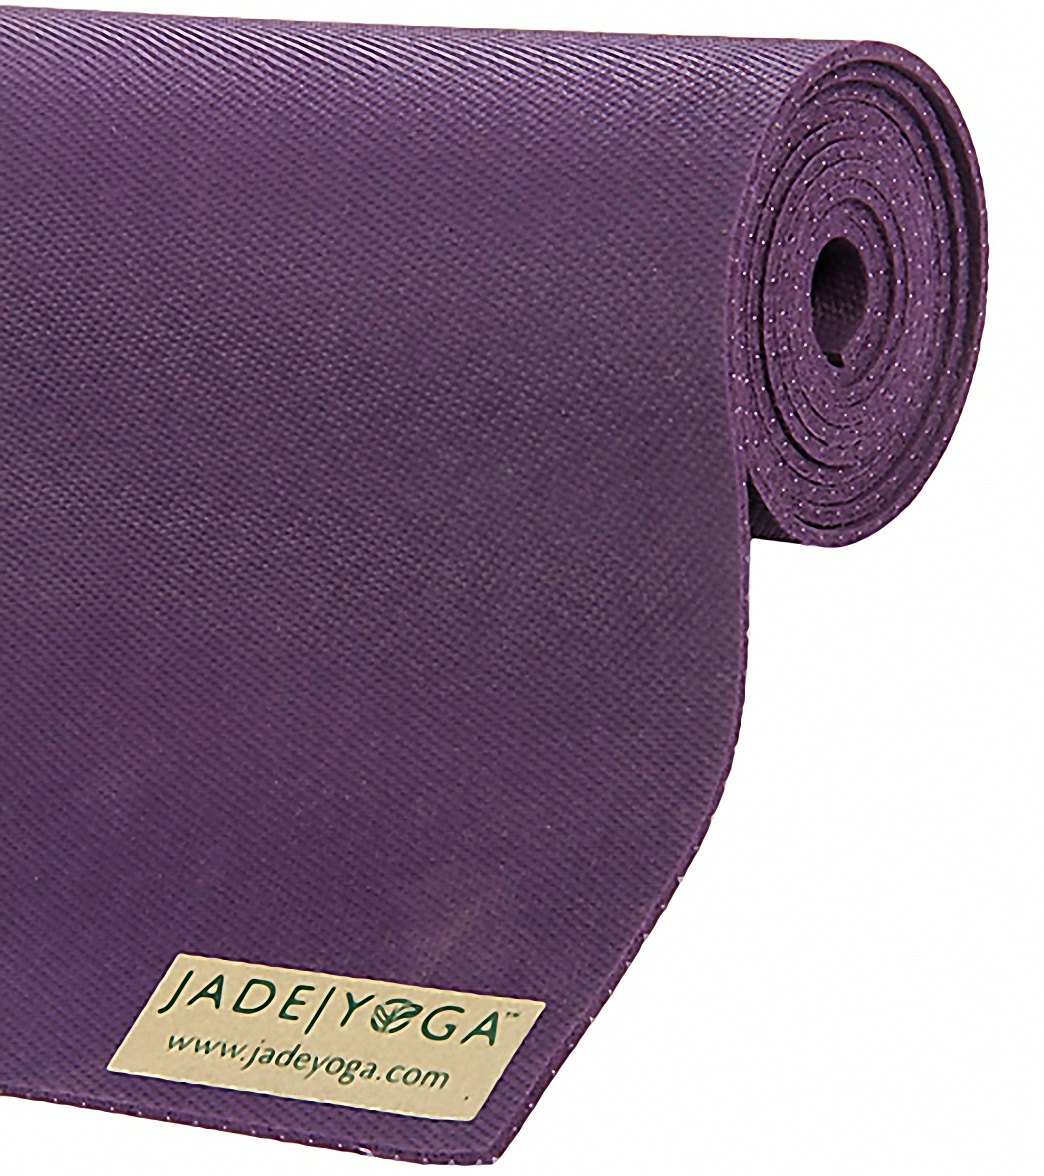 Jade Yoga Travel Natural Rubber Yoga Mat 68 3.5mm